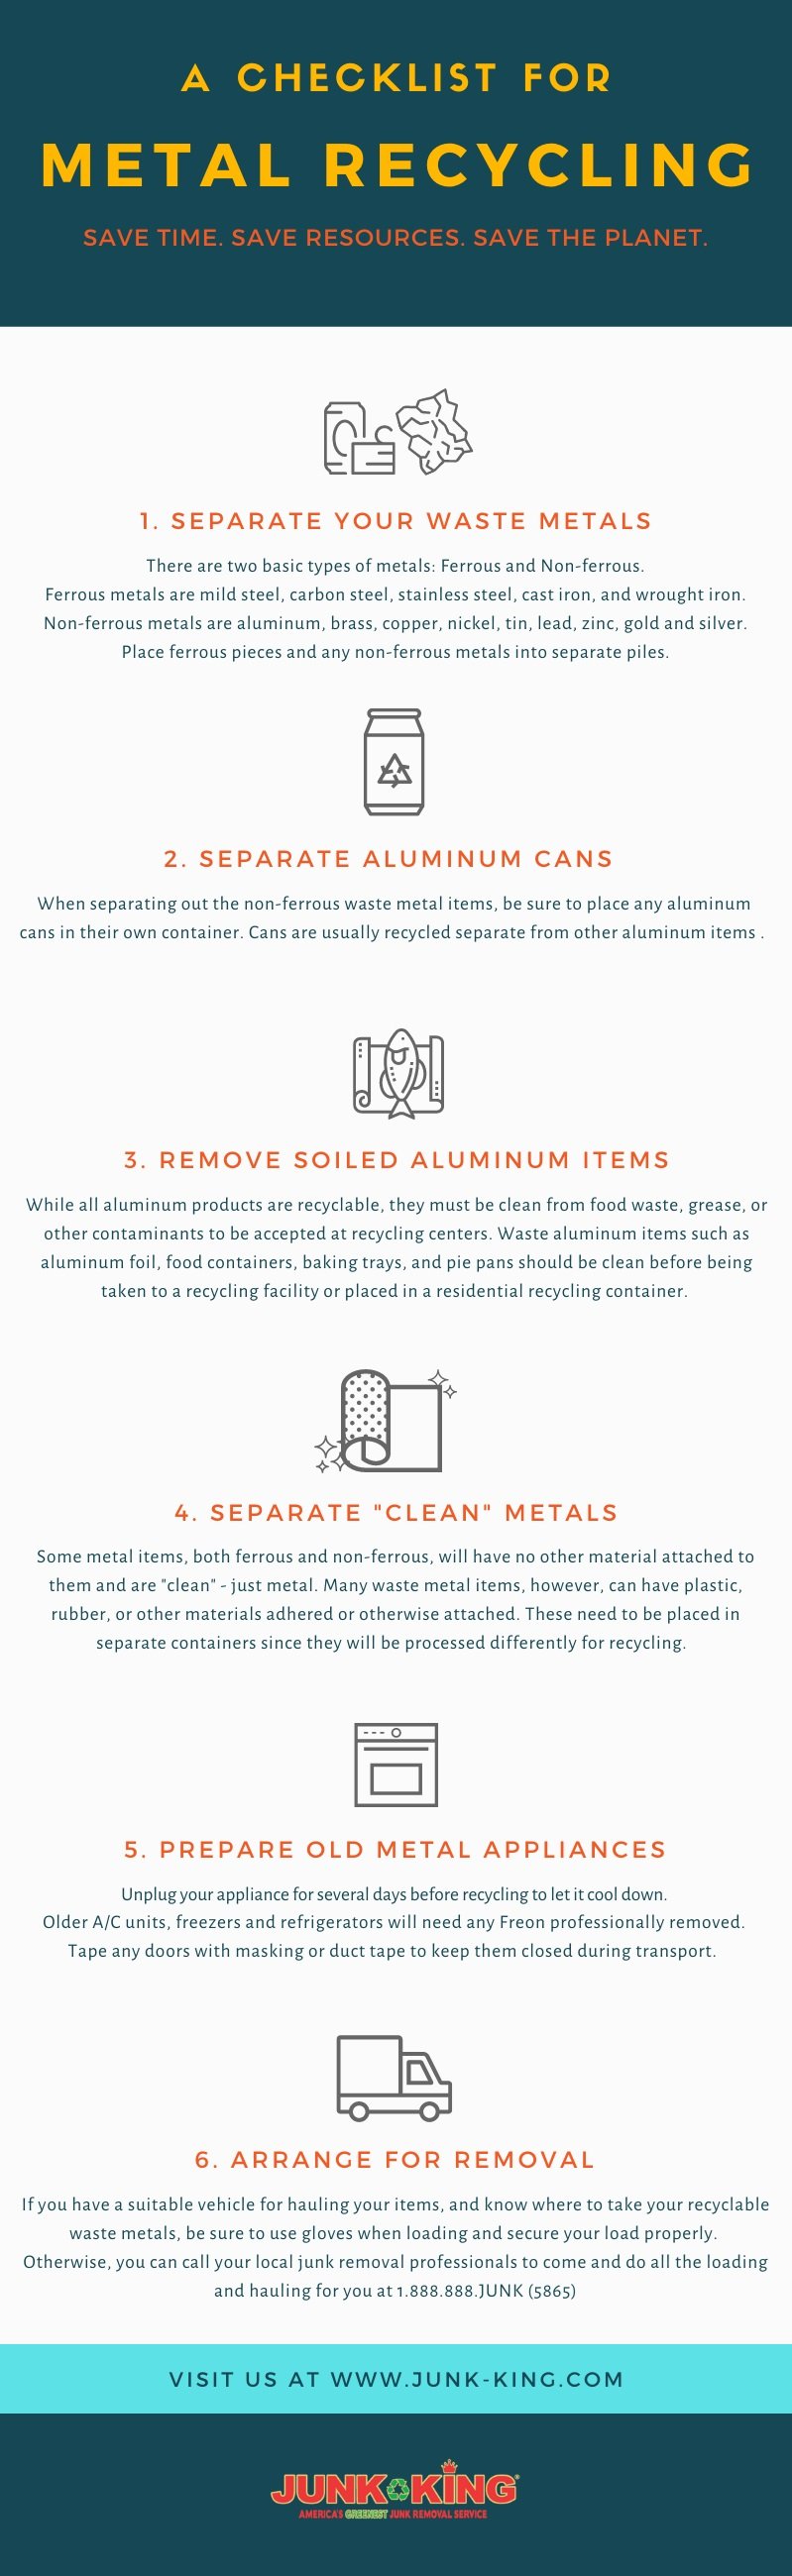 checklist_recycling_metals_jpg